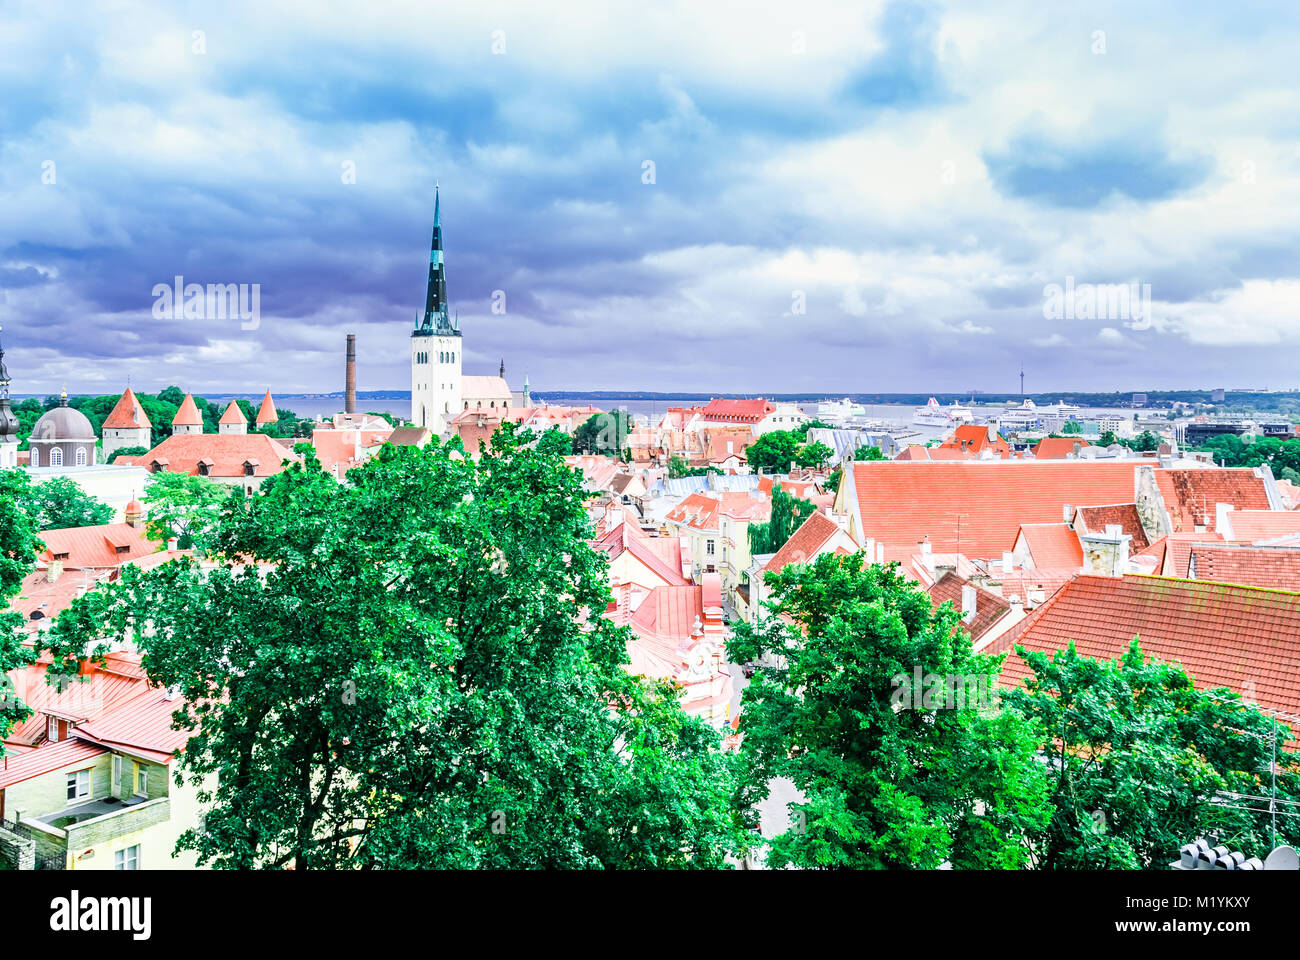 Blick auf die Stadt der historischen Altstadt von Tallinn - Estland Stockfoto